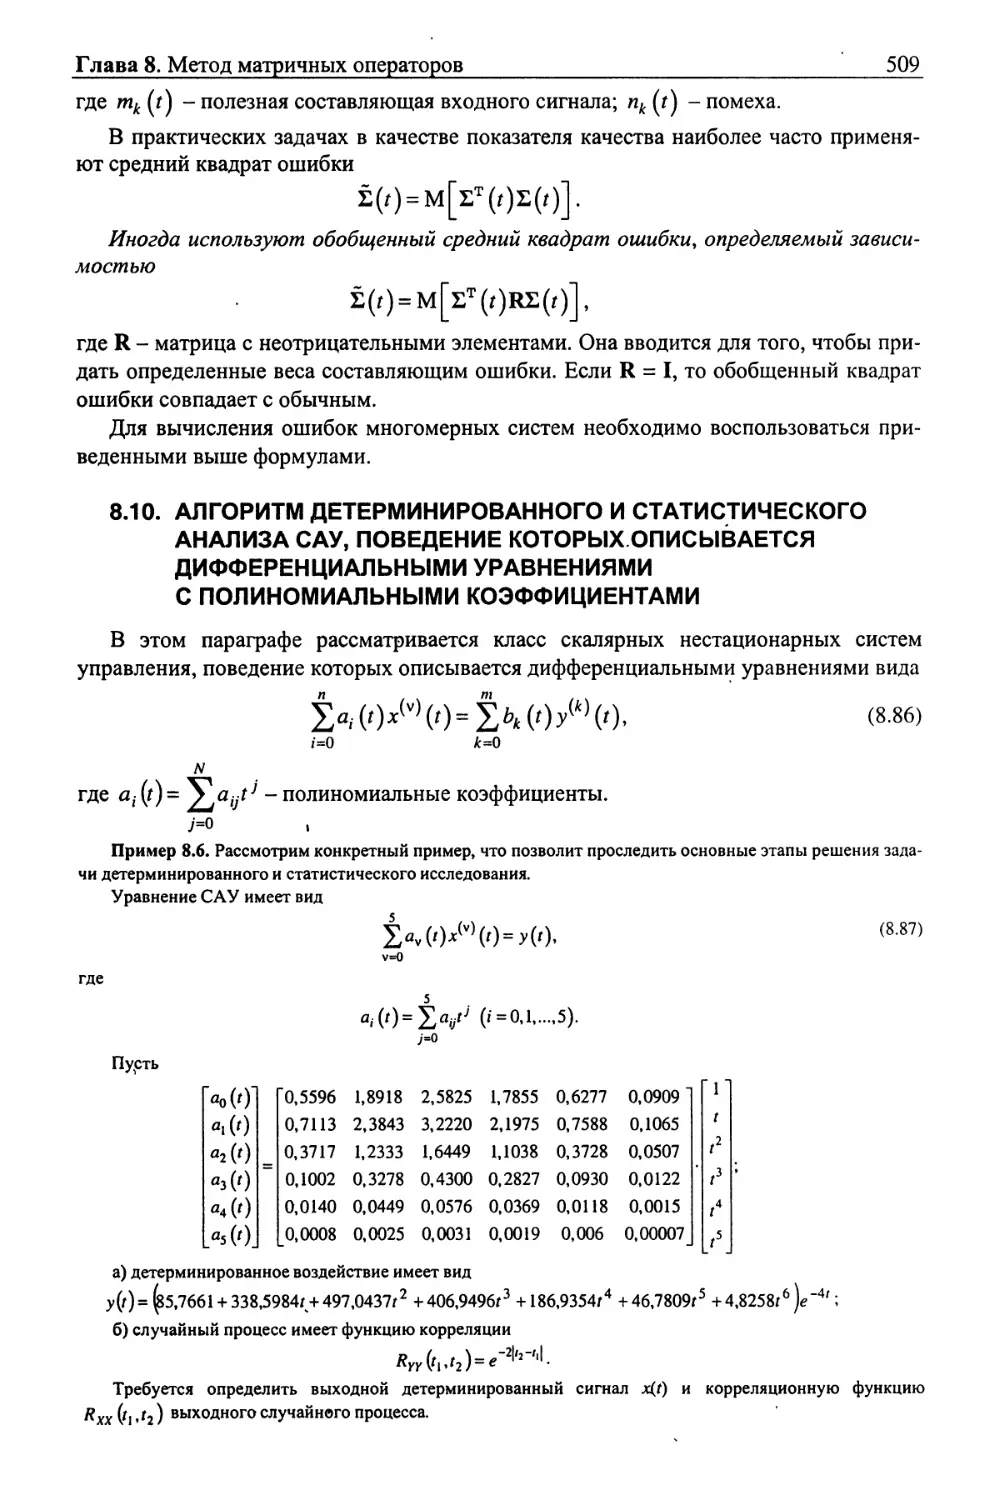 8.10. Алгоритм детерминированного и статистического анализа САУ, поведение которых описывается дифференциальными уравнениями с полиномиальными коэффициентами